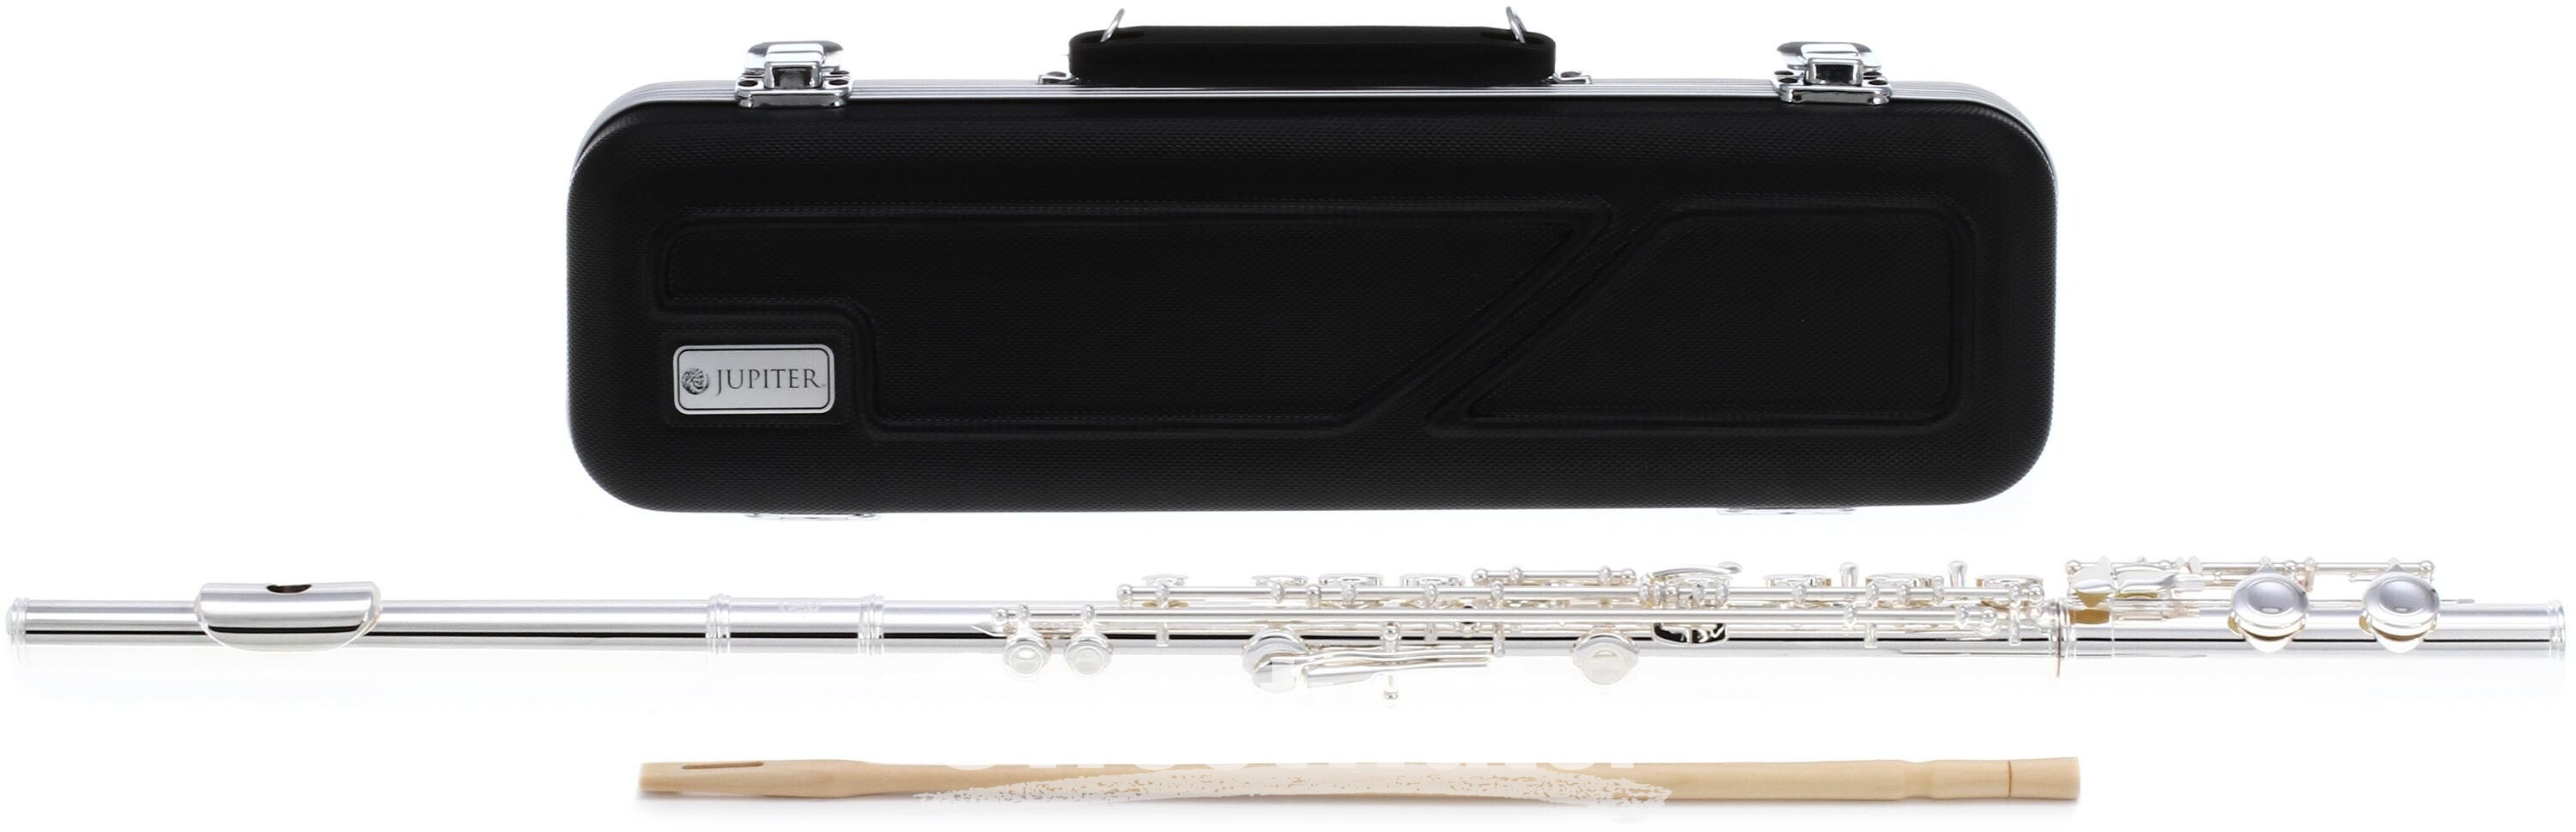 Jupiter JFL710 Standard Flute with Offset G Key System and Top Adjustment  Screws Sweetwater